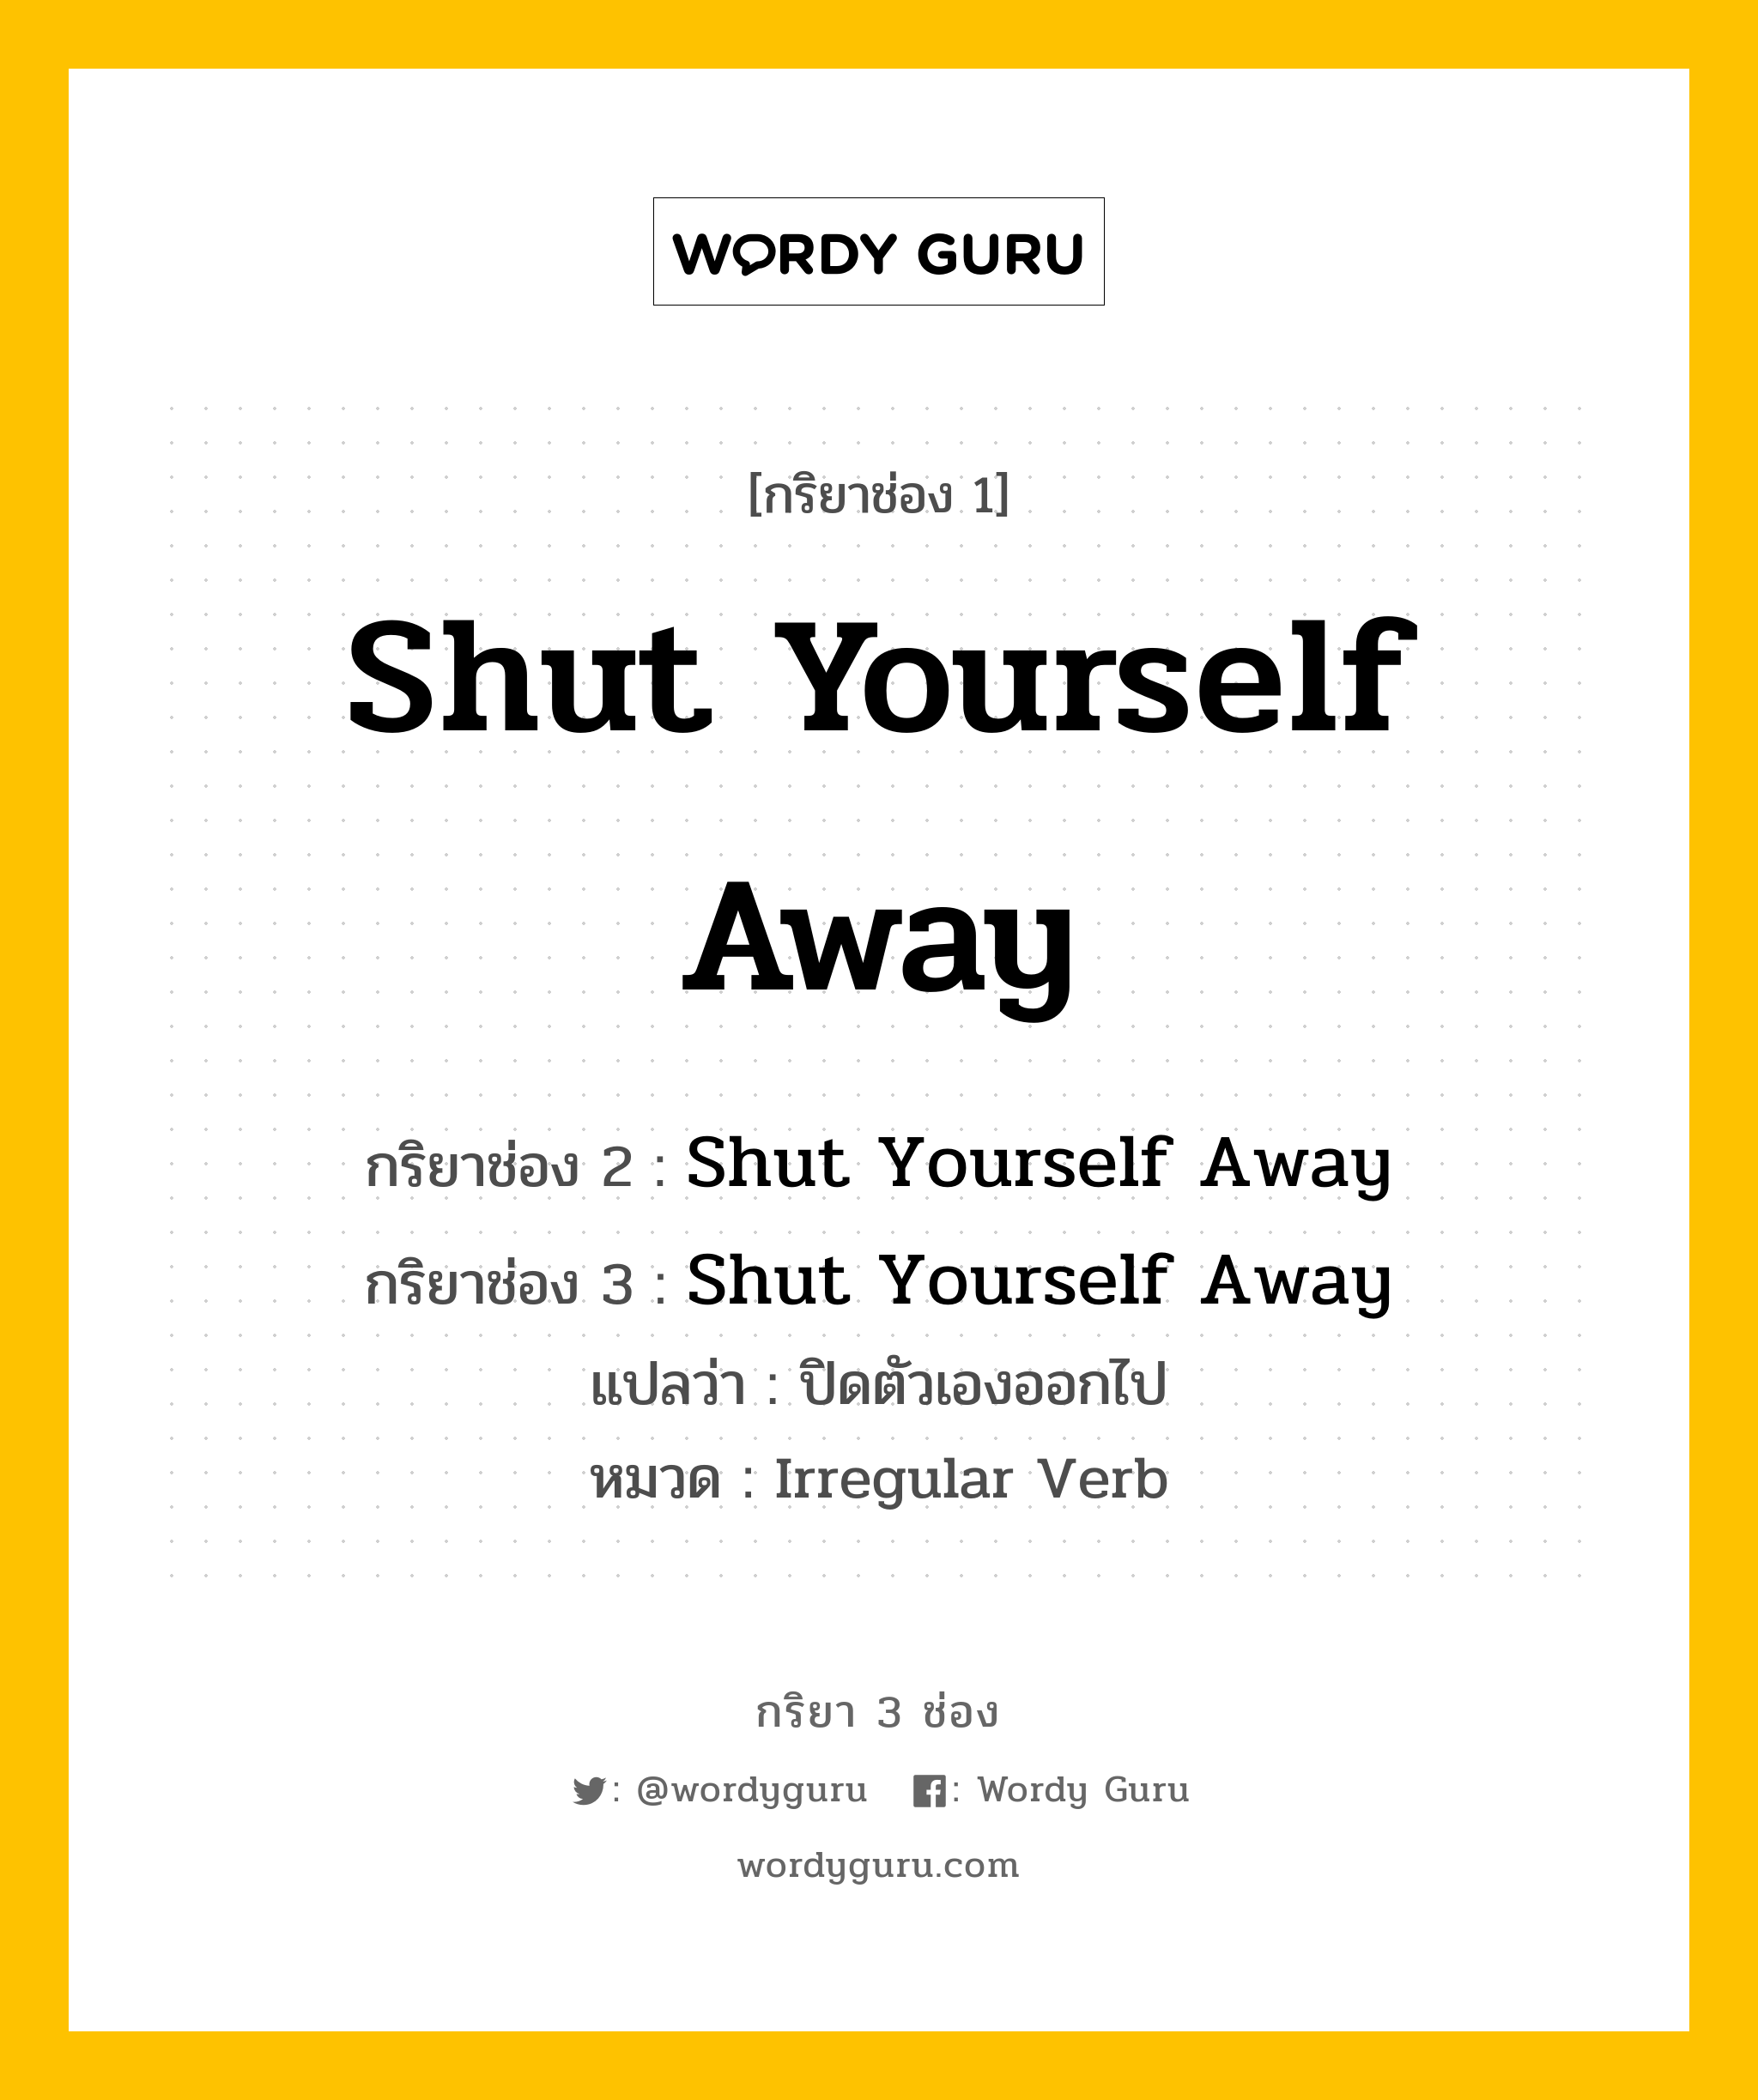 กริยา 3 ช่อง ของ Shut Yourself Away คืออะไร? มาดูคำอ่าน คำแปลกันเลย, กริยาช่อง 1 Shut Yourself Away กริยาช่อง 2 Shut Yourself Away กริยาช่อง 3 Shut Yourself Away แปลว่า ปิดตัวเองออกไป หมวด Irregular Verb หมวด Irregular Verb